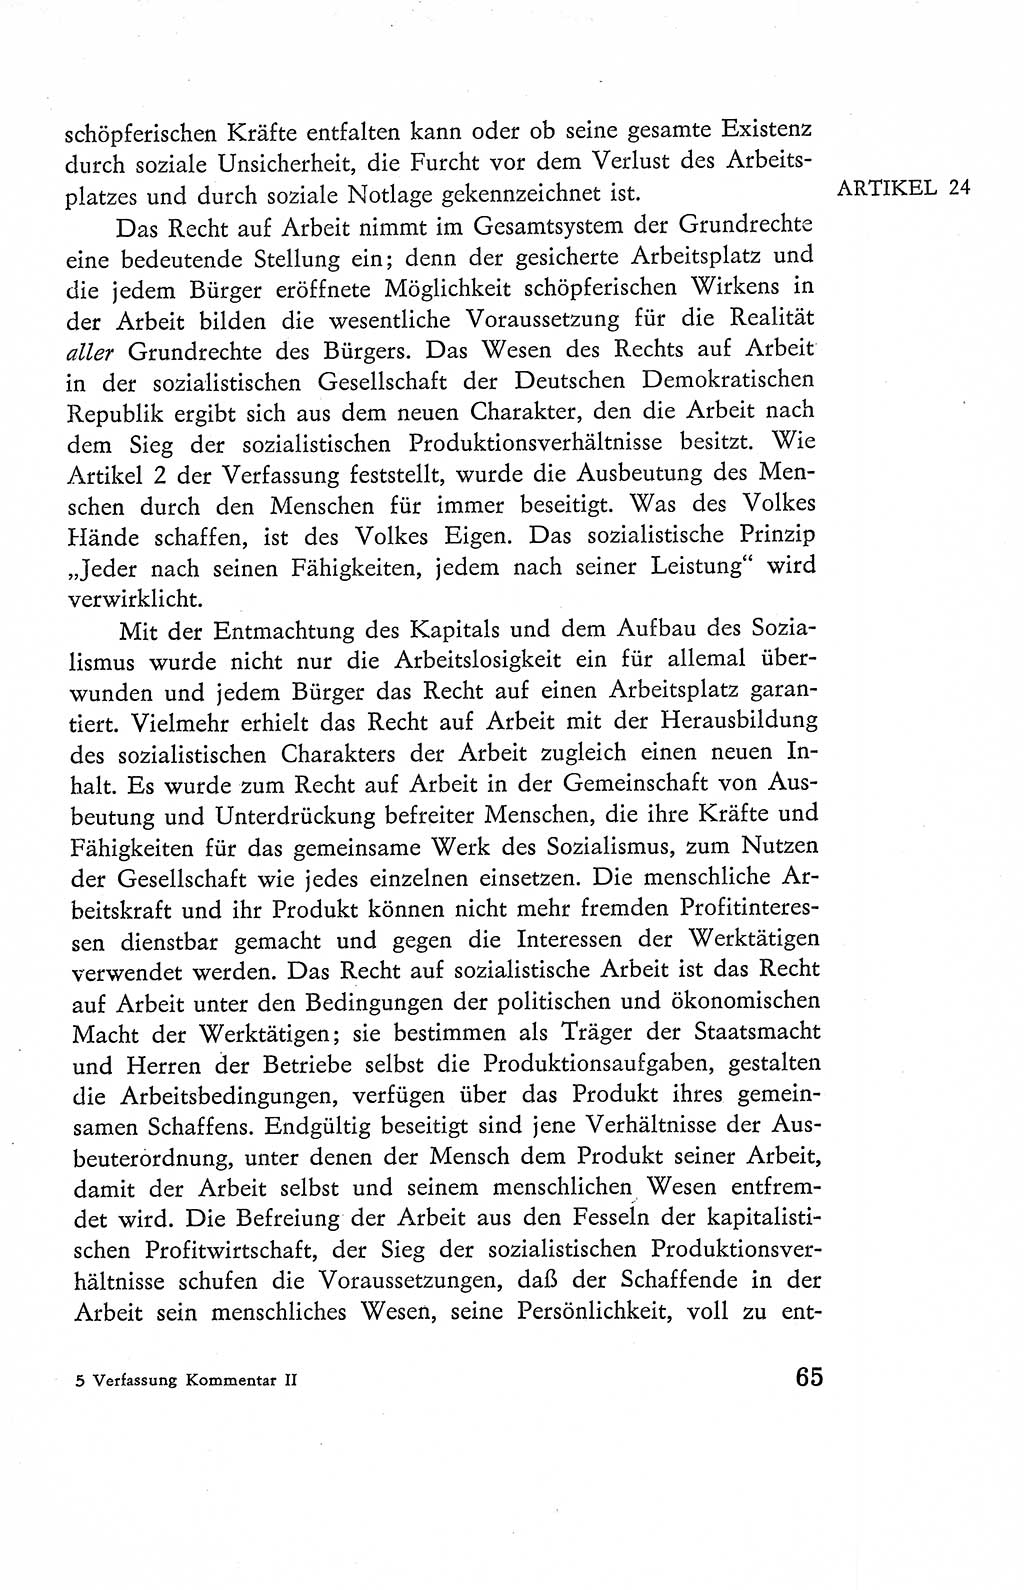 Verfassung der Deutschen Demokratischen Republik (DDR), Dokumente, Kommentar 1969, Band 2, Seite 65 (Verf. DDR Dok. Komm. 1969, Bd. 2, S. 65)